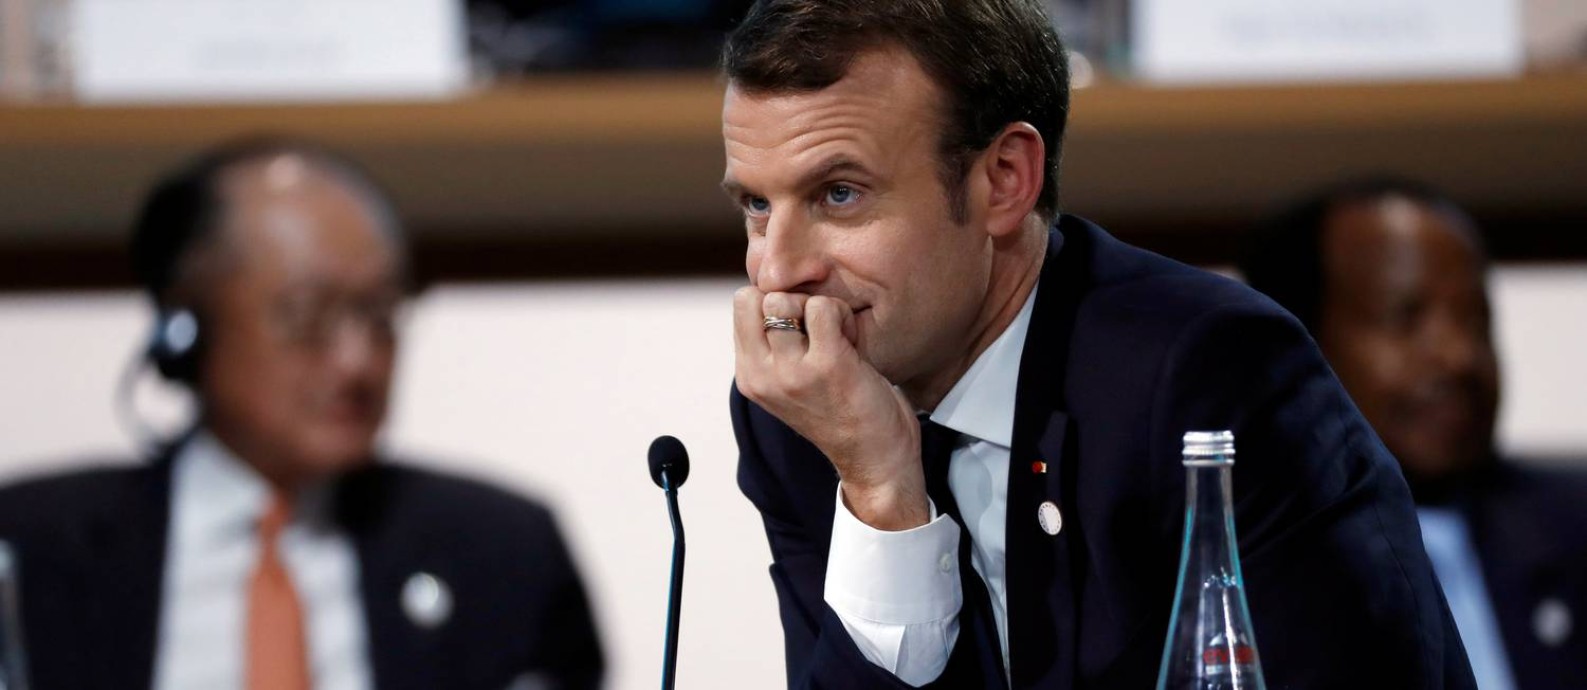 Macron: presidente francês quer se firmar como nova liderança na luta contra as mudanças climáticas Foto: Etienne Laurent / REUTERS